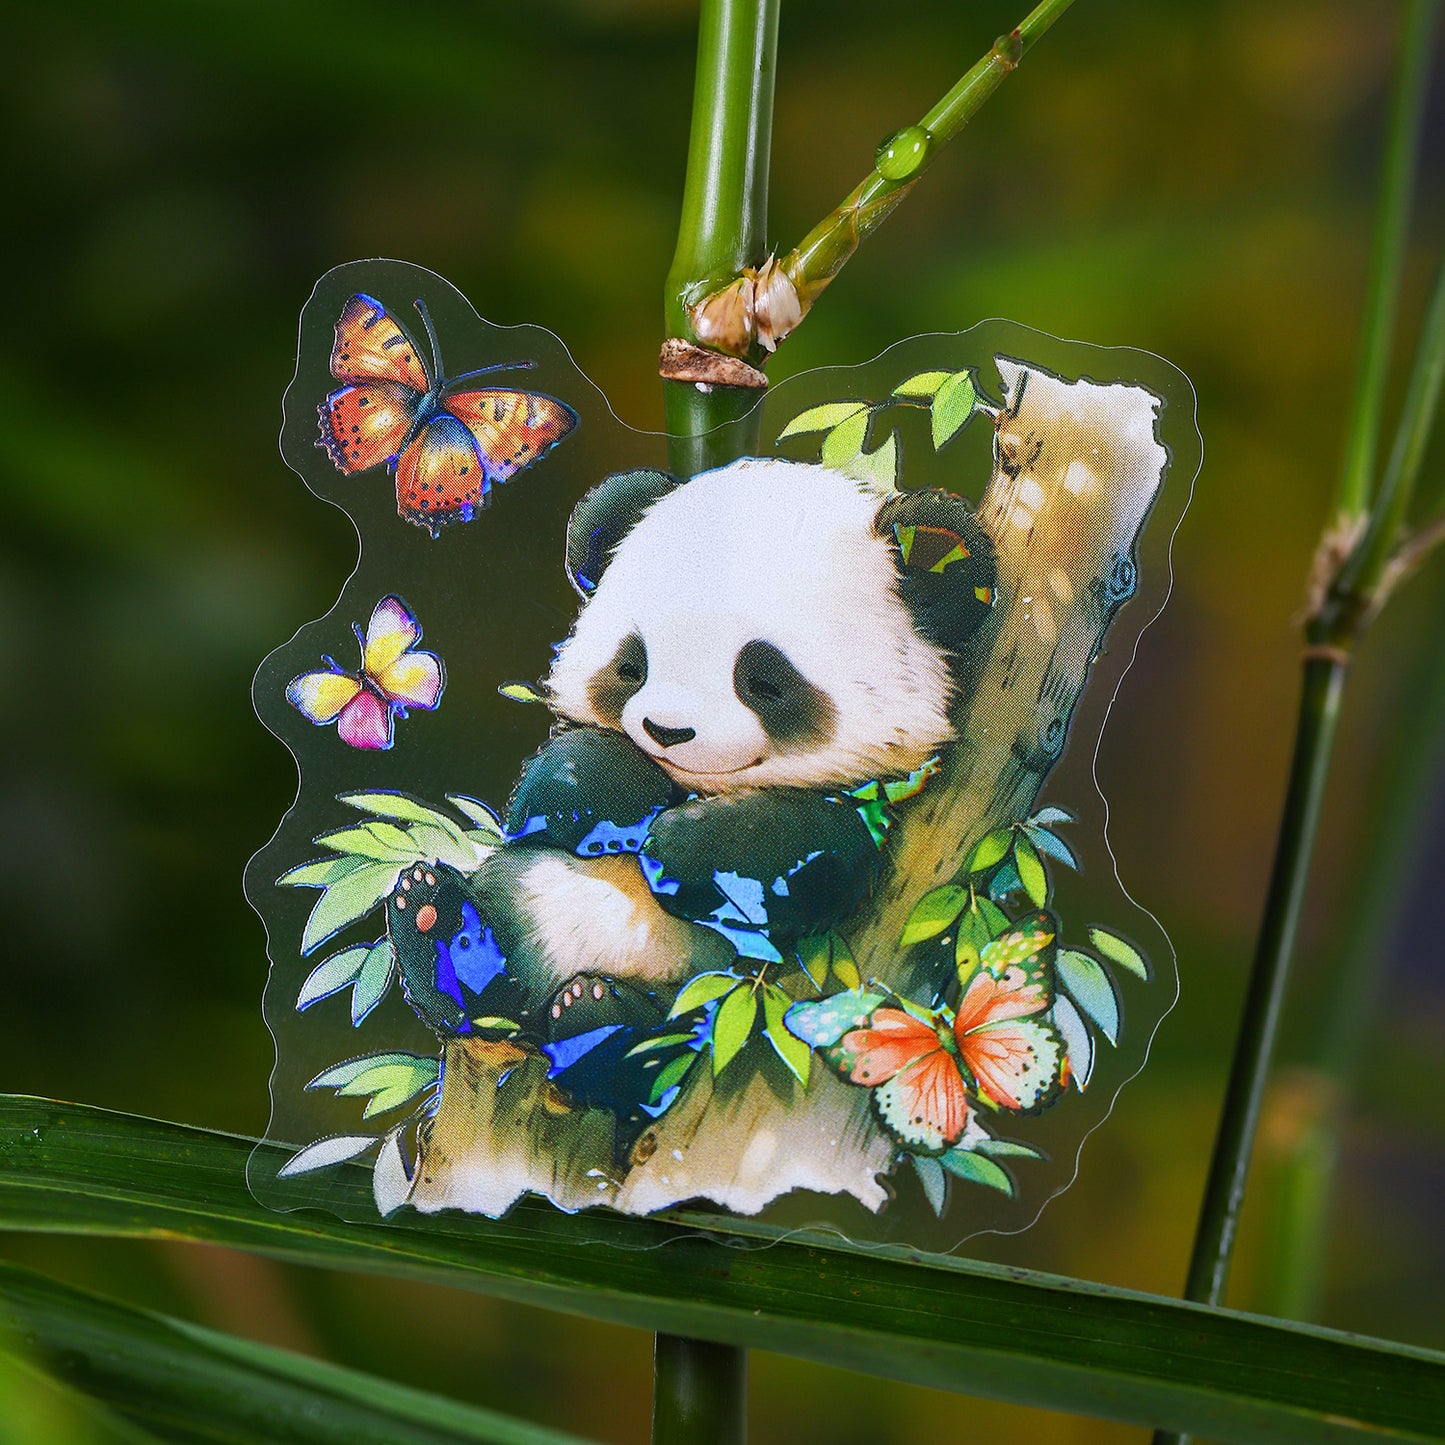 Cute Panda Stickers 10pcs